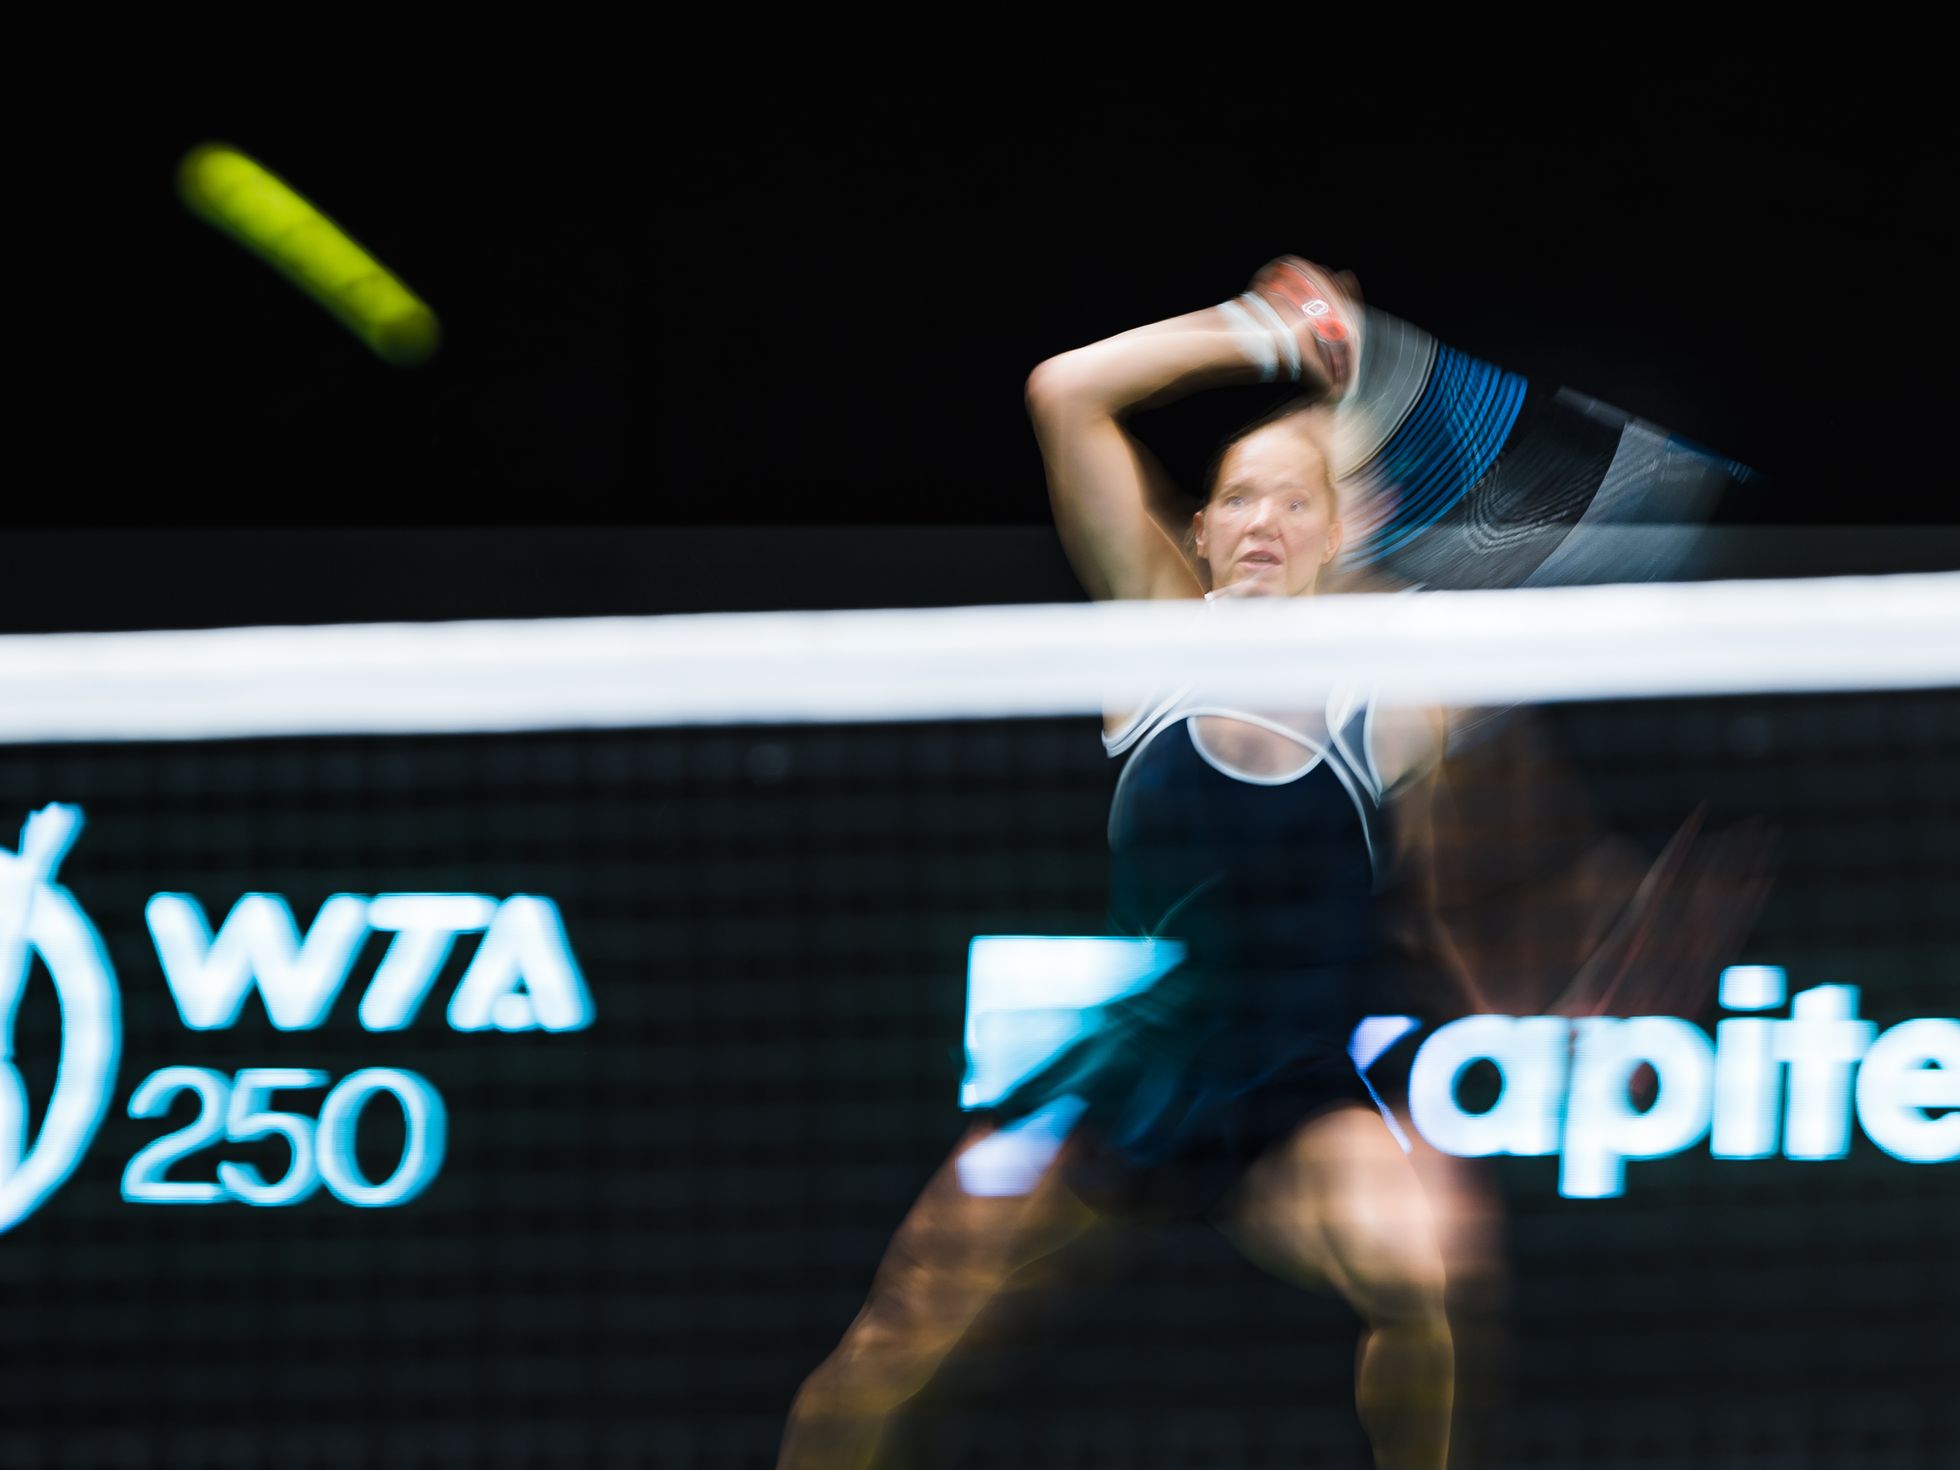 Sinimustvalgega võidule. Kaia Kanepi võitis koduse WTA turniiri esimeses voorus lõunanaabrit Ostapenkot reketiga, mis pika säriga pildistades kangastus Eesti lipuks.